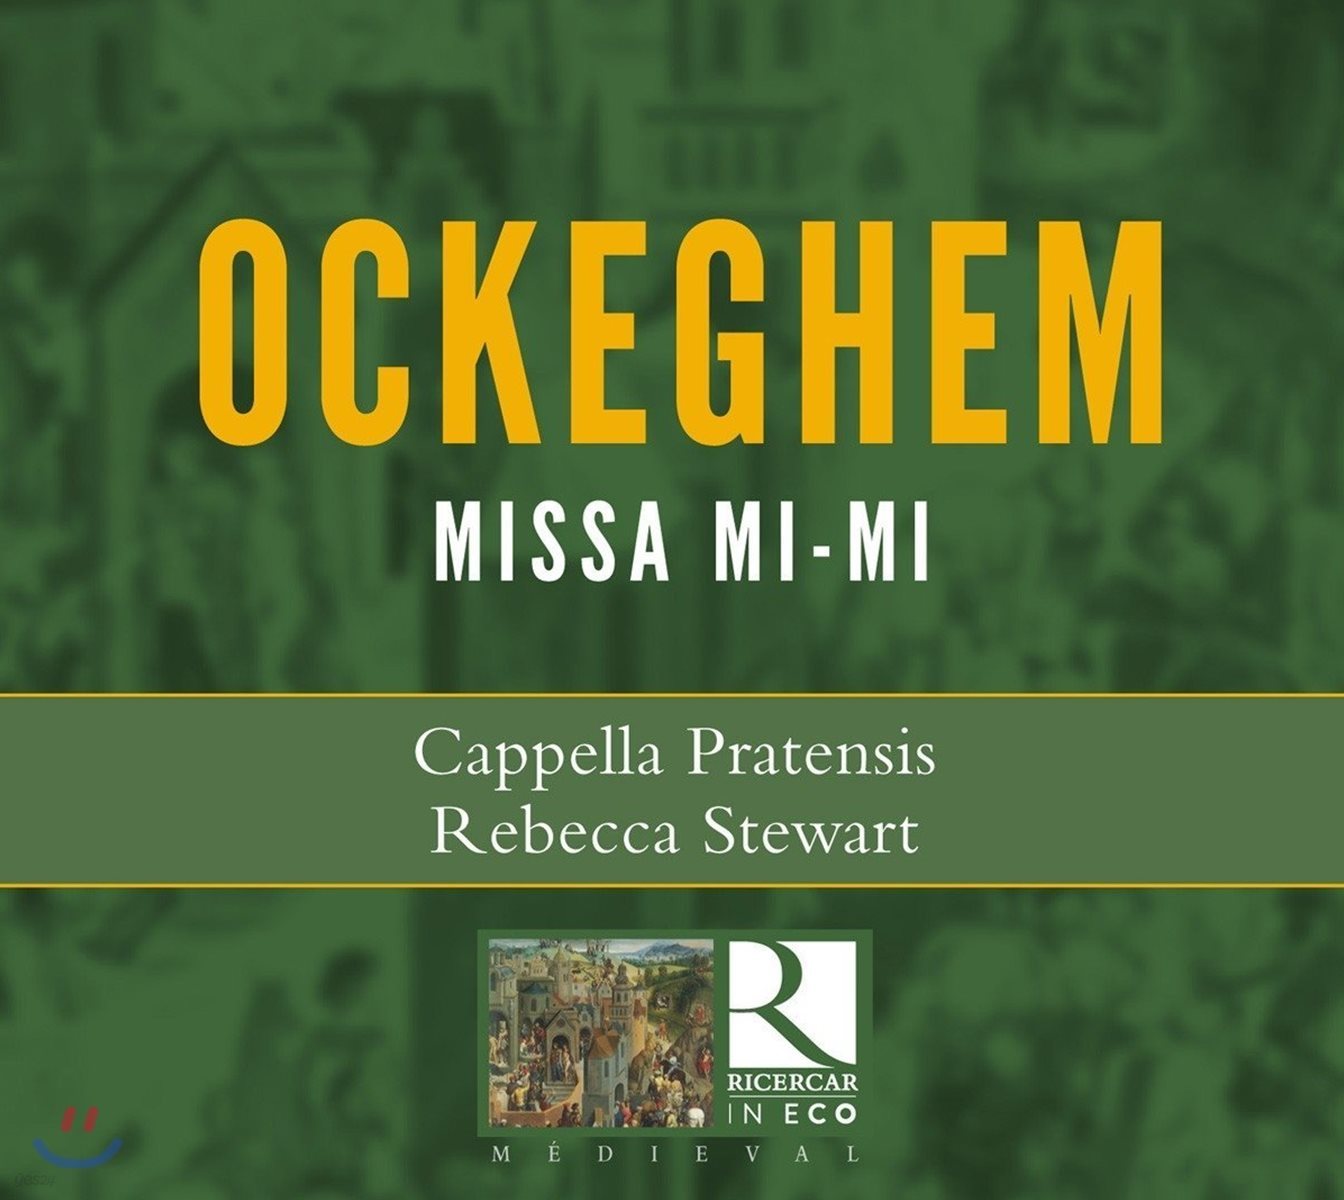 Cappella Pratensis 오케겜: 미사 '미-미' (Ockeghem: Missa Mi-Mi)